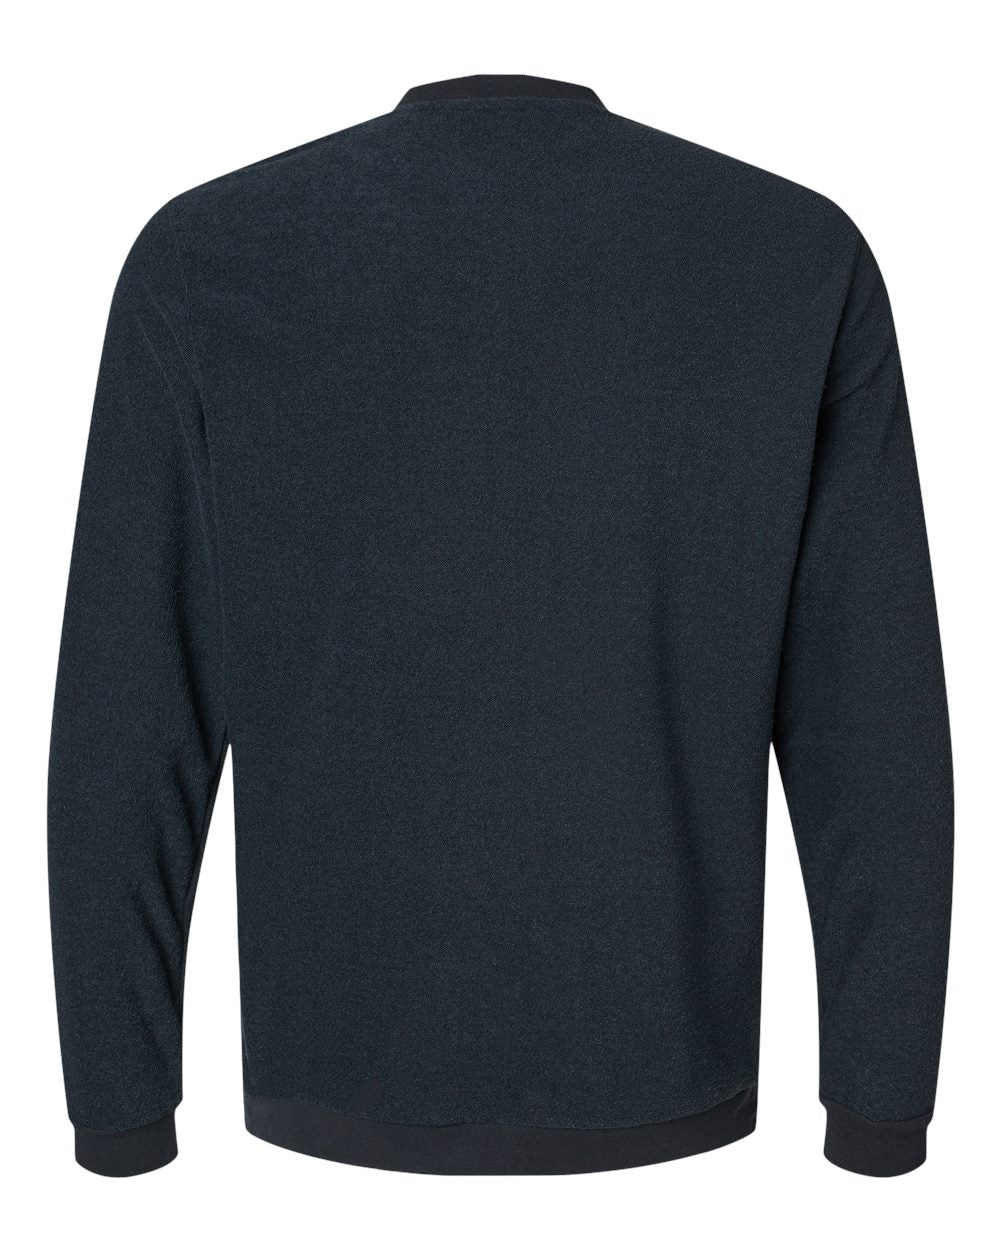 Adidas A586 Crewneck Sweatshirt #color_Black